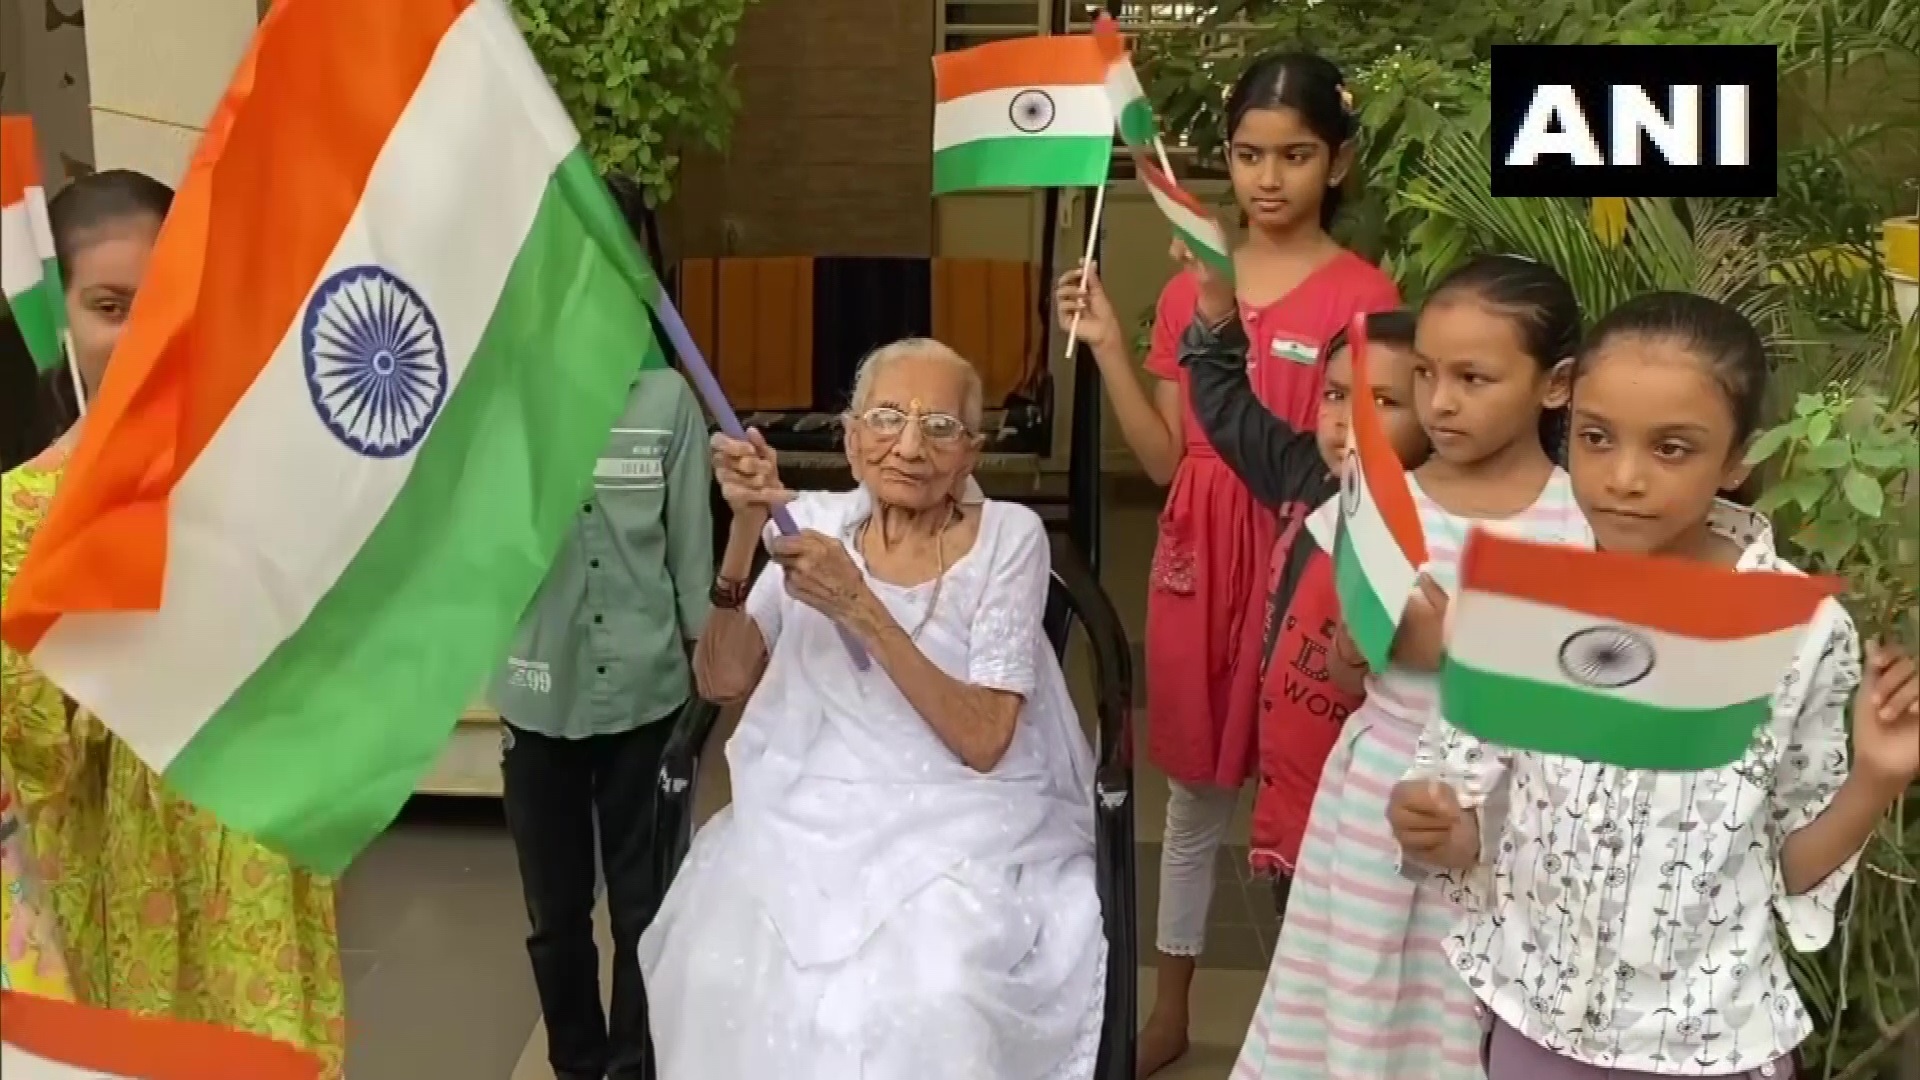  प्रधानमंत्री नरेंद्र मोदी ने 22 जुलाई को देशवासियों से ‘हर घर तिरंगा’ अभियान के तहत 13 से 15 अगस्त तक अपने घरों में राष्ट्रीय ध्वज लगाने की अपील की थी.